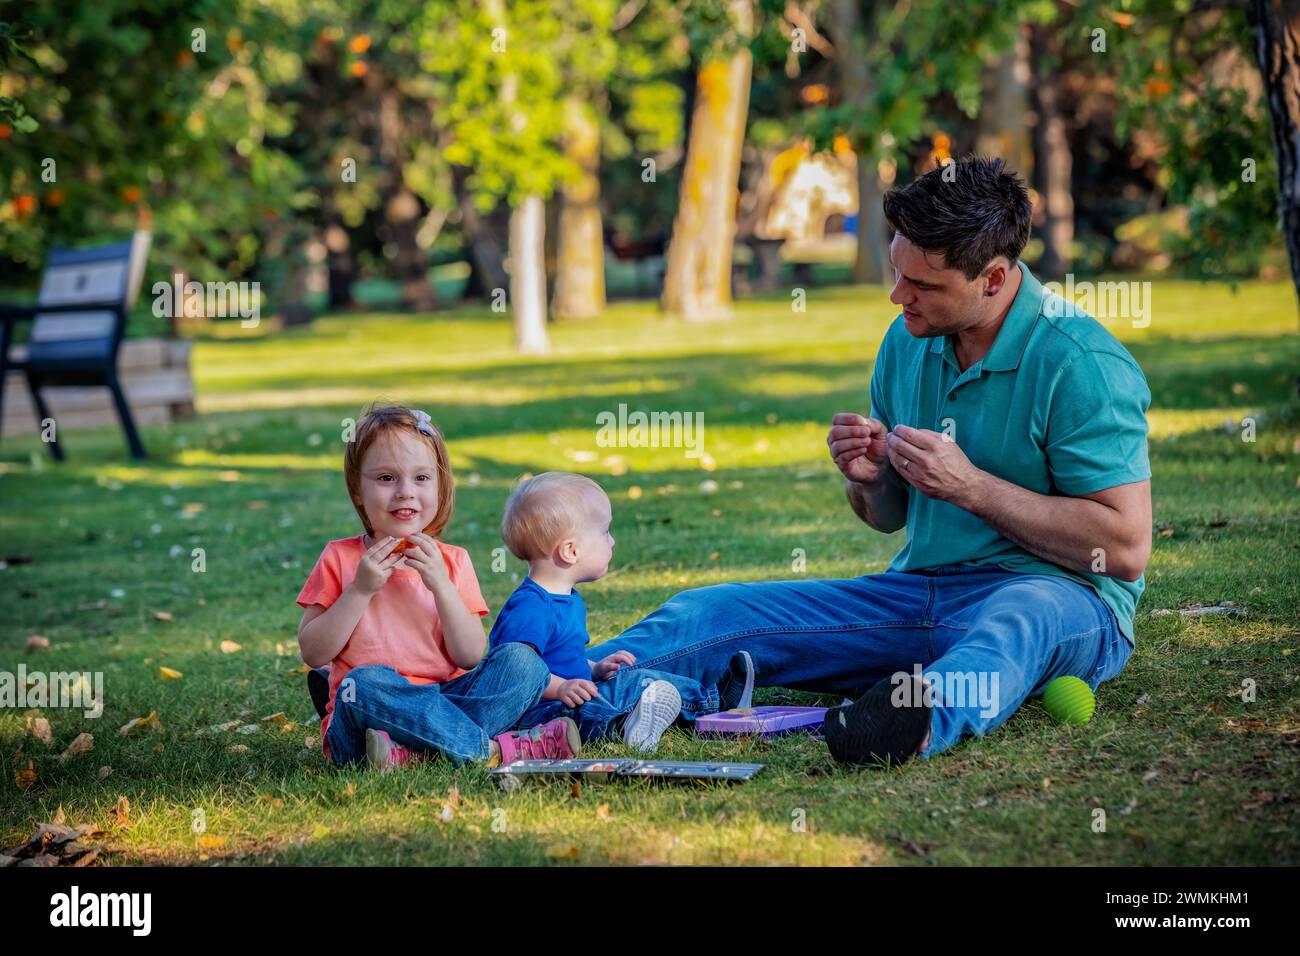 Der Vater verbringt Zeit und die Gebärdensprache mit seinem kleinen Sohn, der an dem Down-Syndrom leidet, während seine Tochter mitspielt, in einem Stadtpark, der... Stockfoto